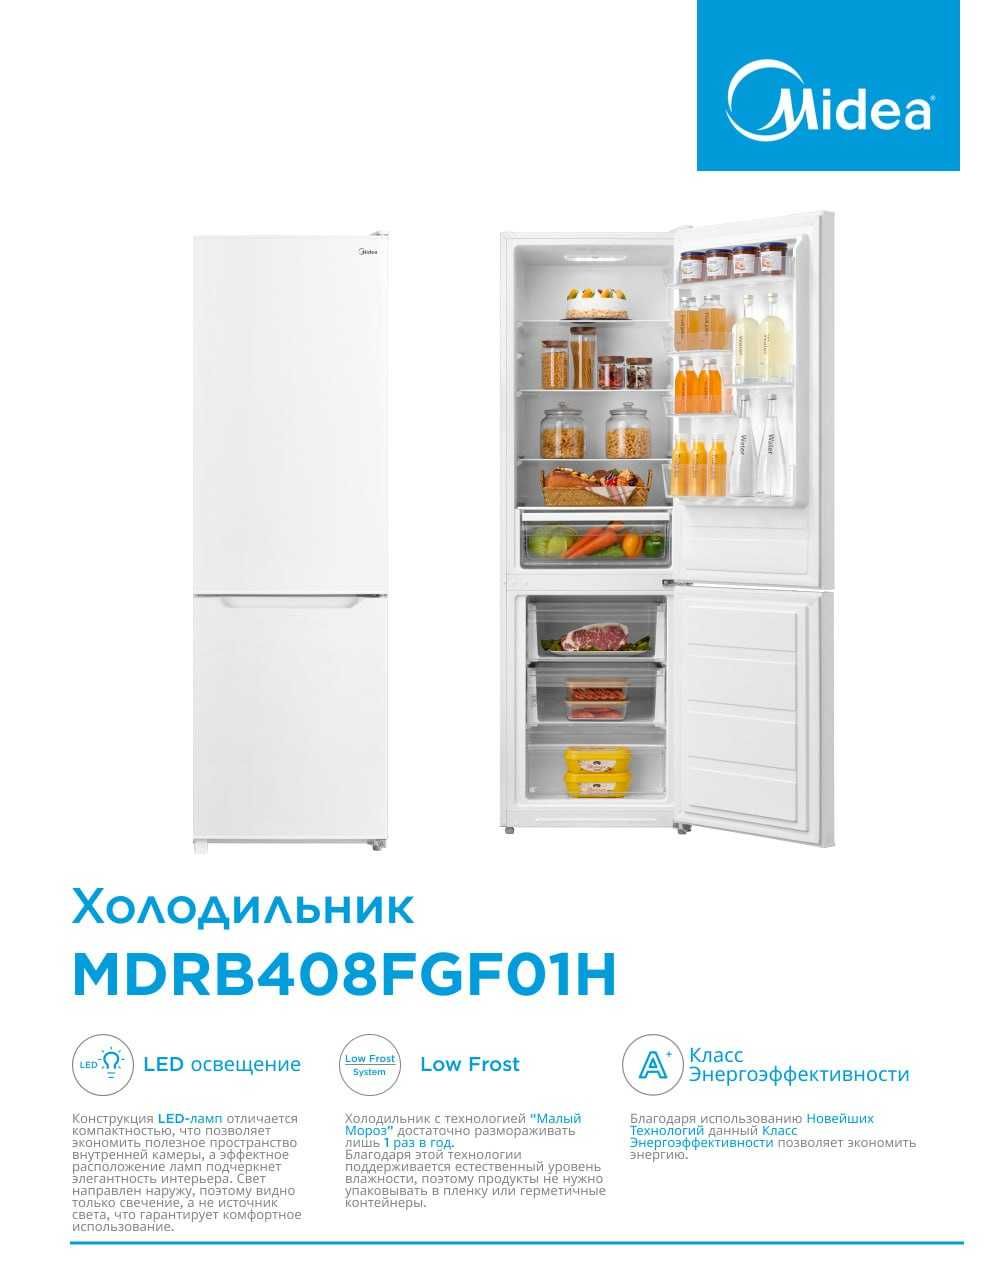 Холодильник от фирмы Midea/Гарантия/Доставка